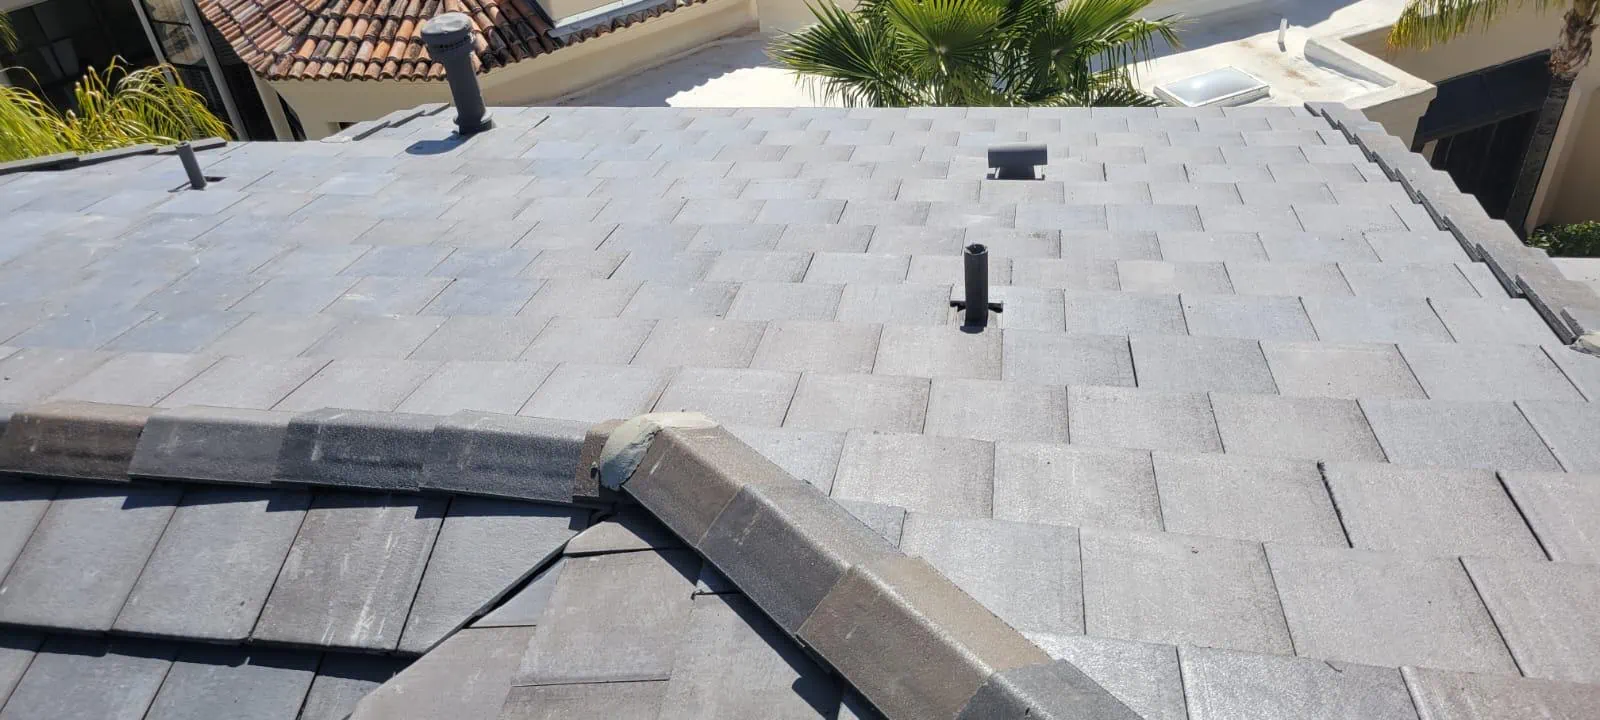 side of residential tile roof repair in az